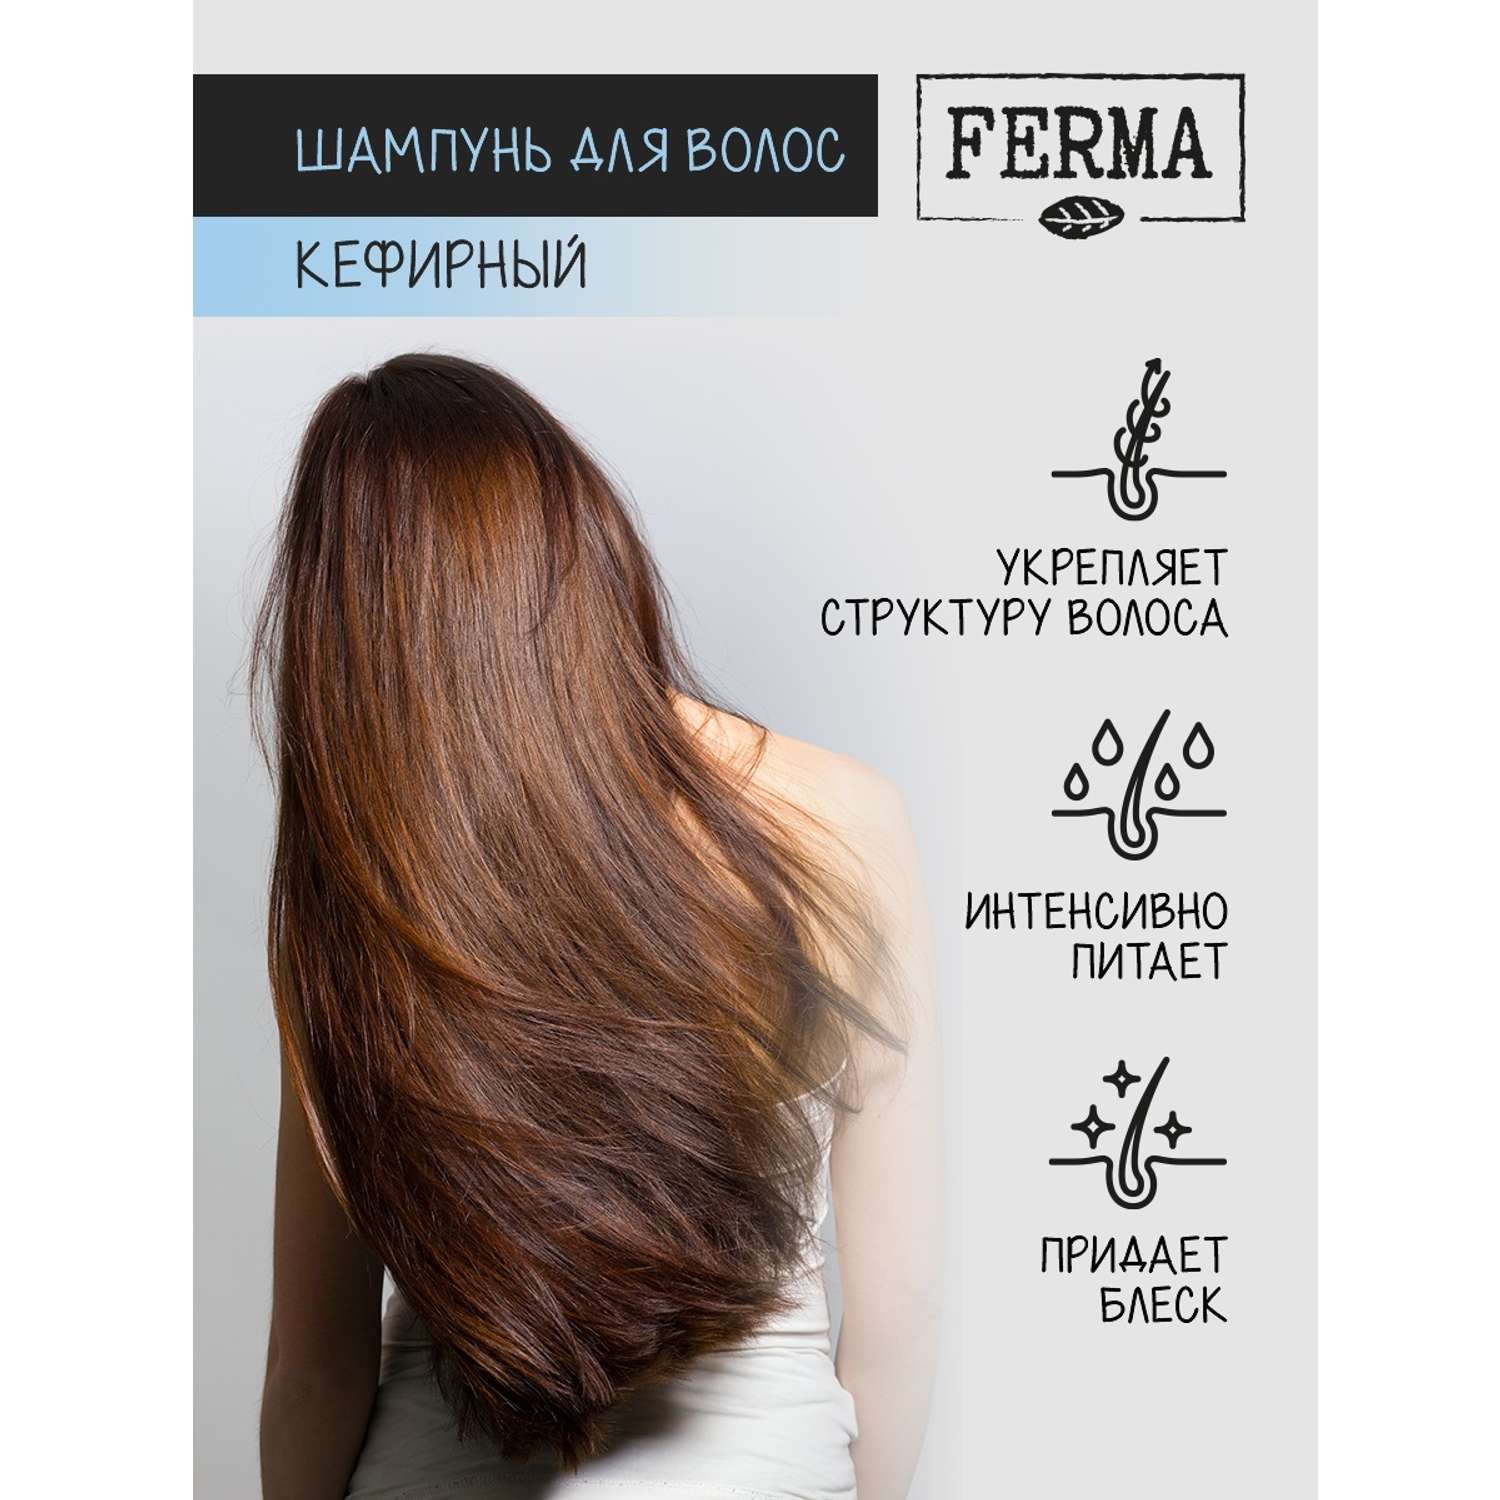 Шампунь для волос Ferma Кефирный 500мл - фото 3